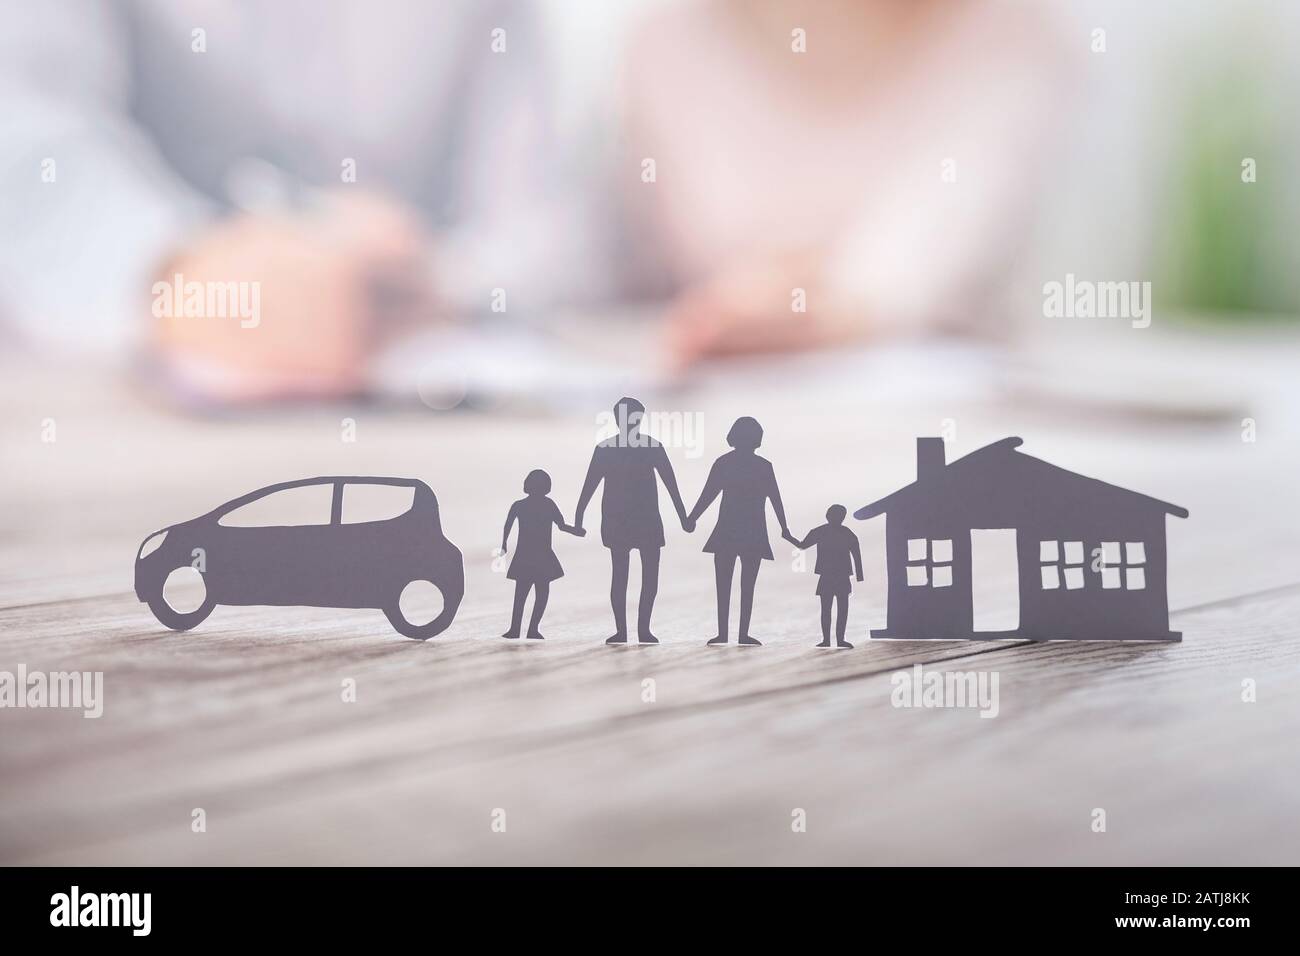 Versicherung zum Schutz der Gesundheit von Familien - Live-, Haus- und Autokonzept. Schneiden Sie Elemente aus Papier, die die Abdeckung symbolisieren. Stockfoto